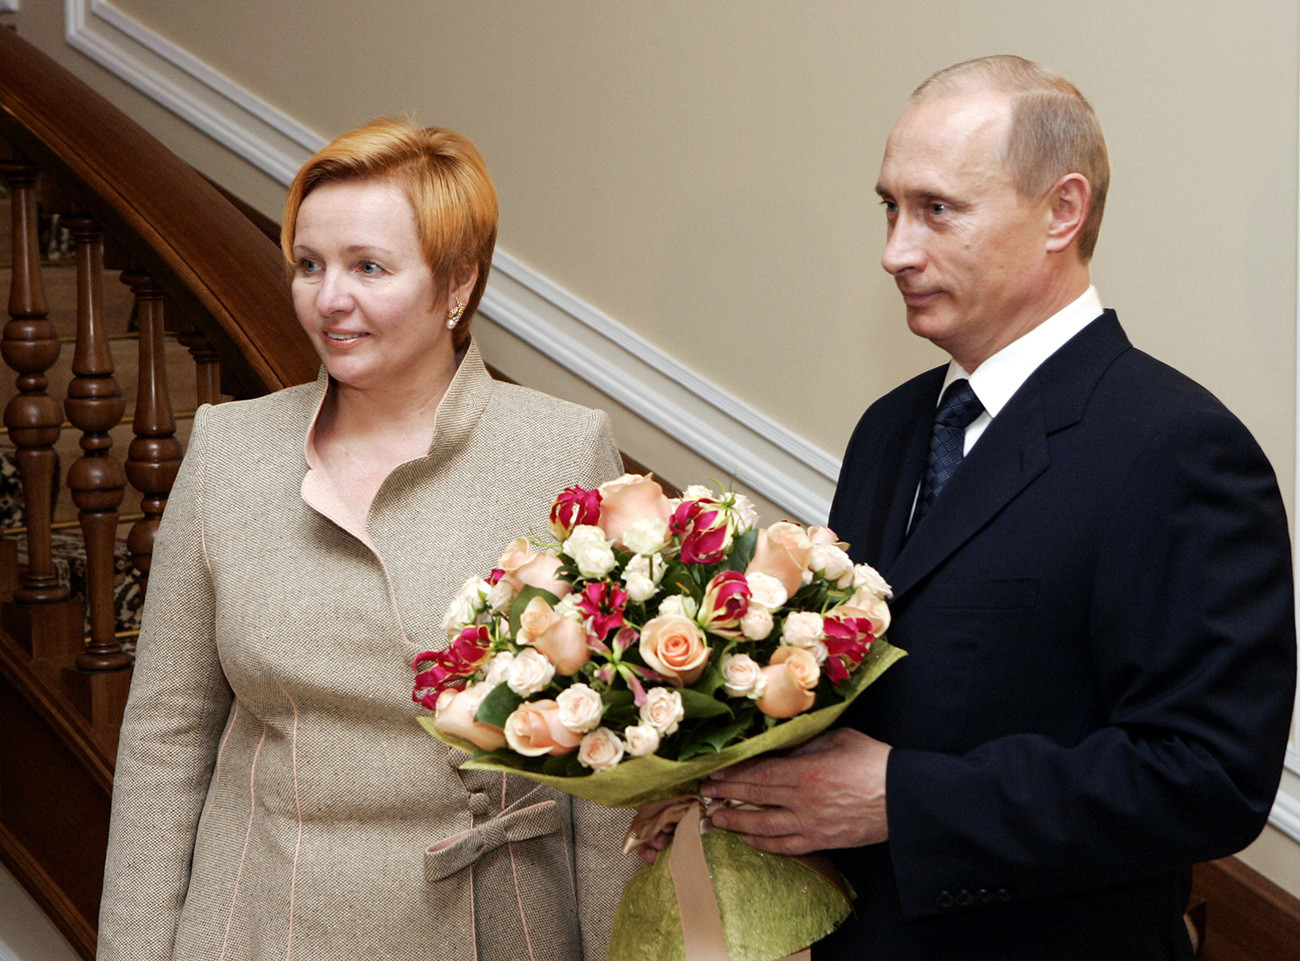 Poutine et son épouse d'alors, Lioudmila.
